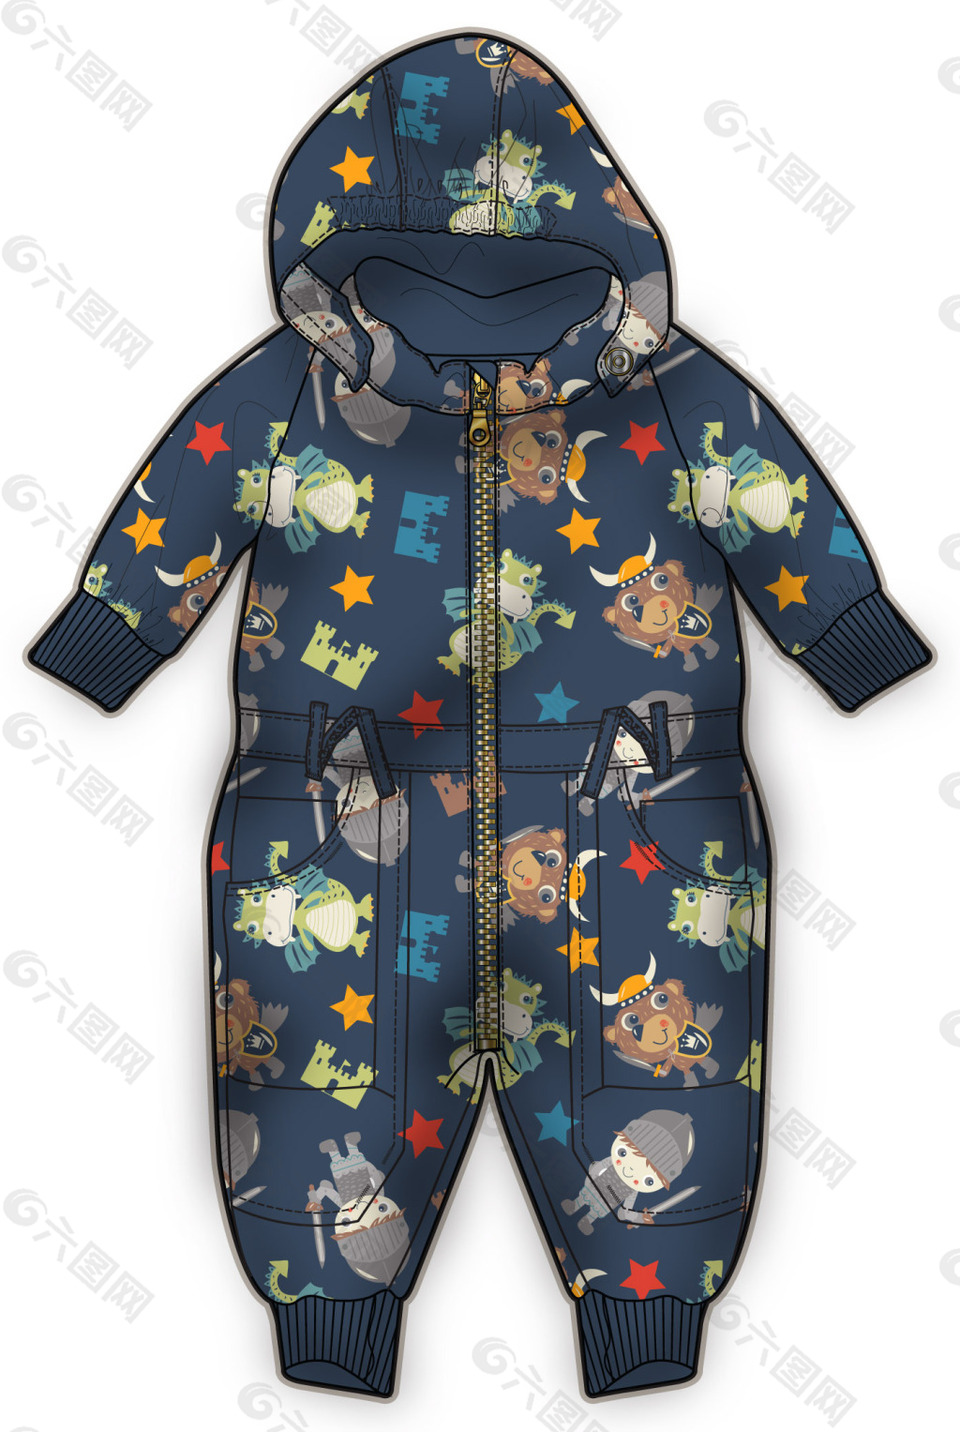 深蓝色婴儿服装彩色设计矢量素材